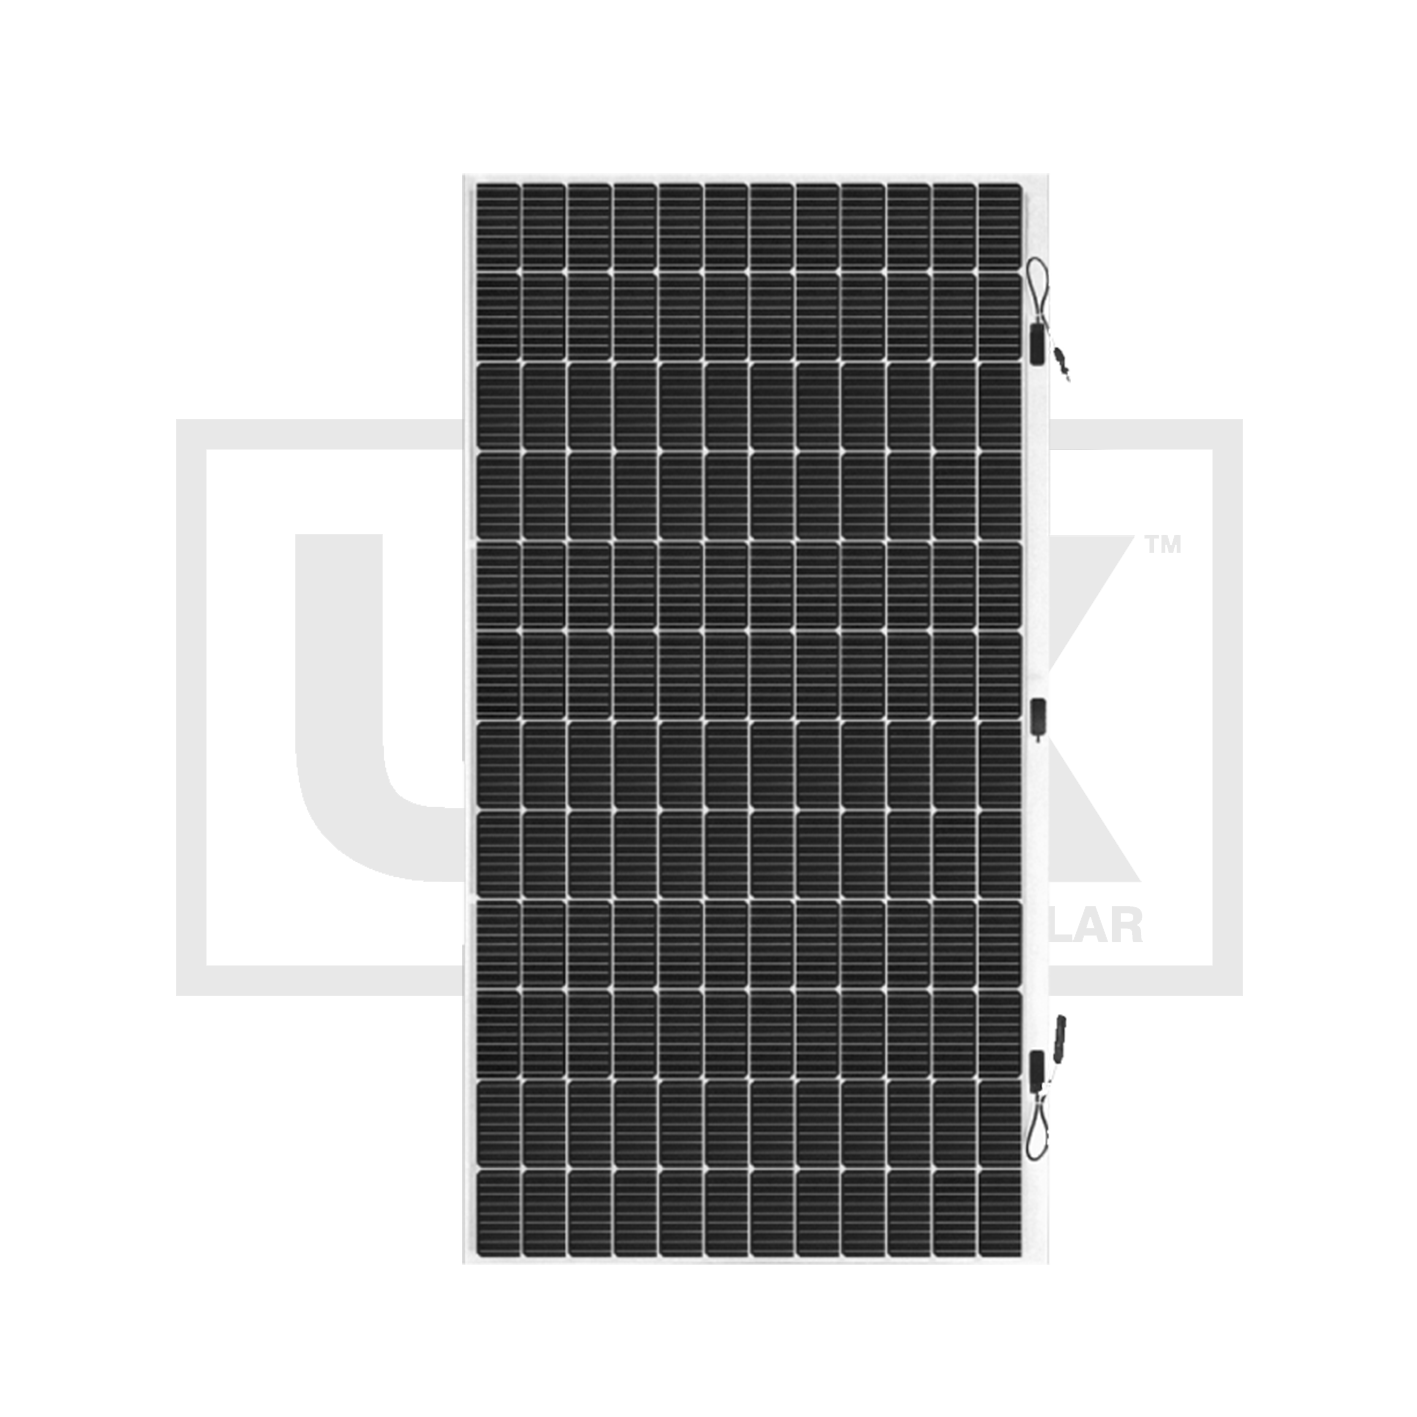 430 Watt Sunman Flexible Solar Panel  5 year marine warranty Mono EARC®